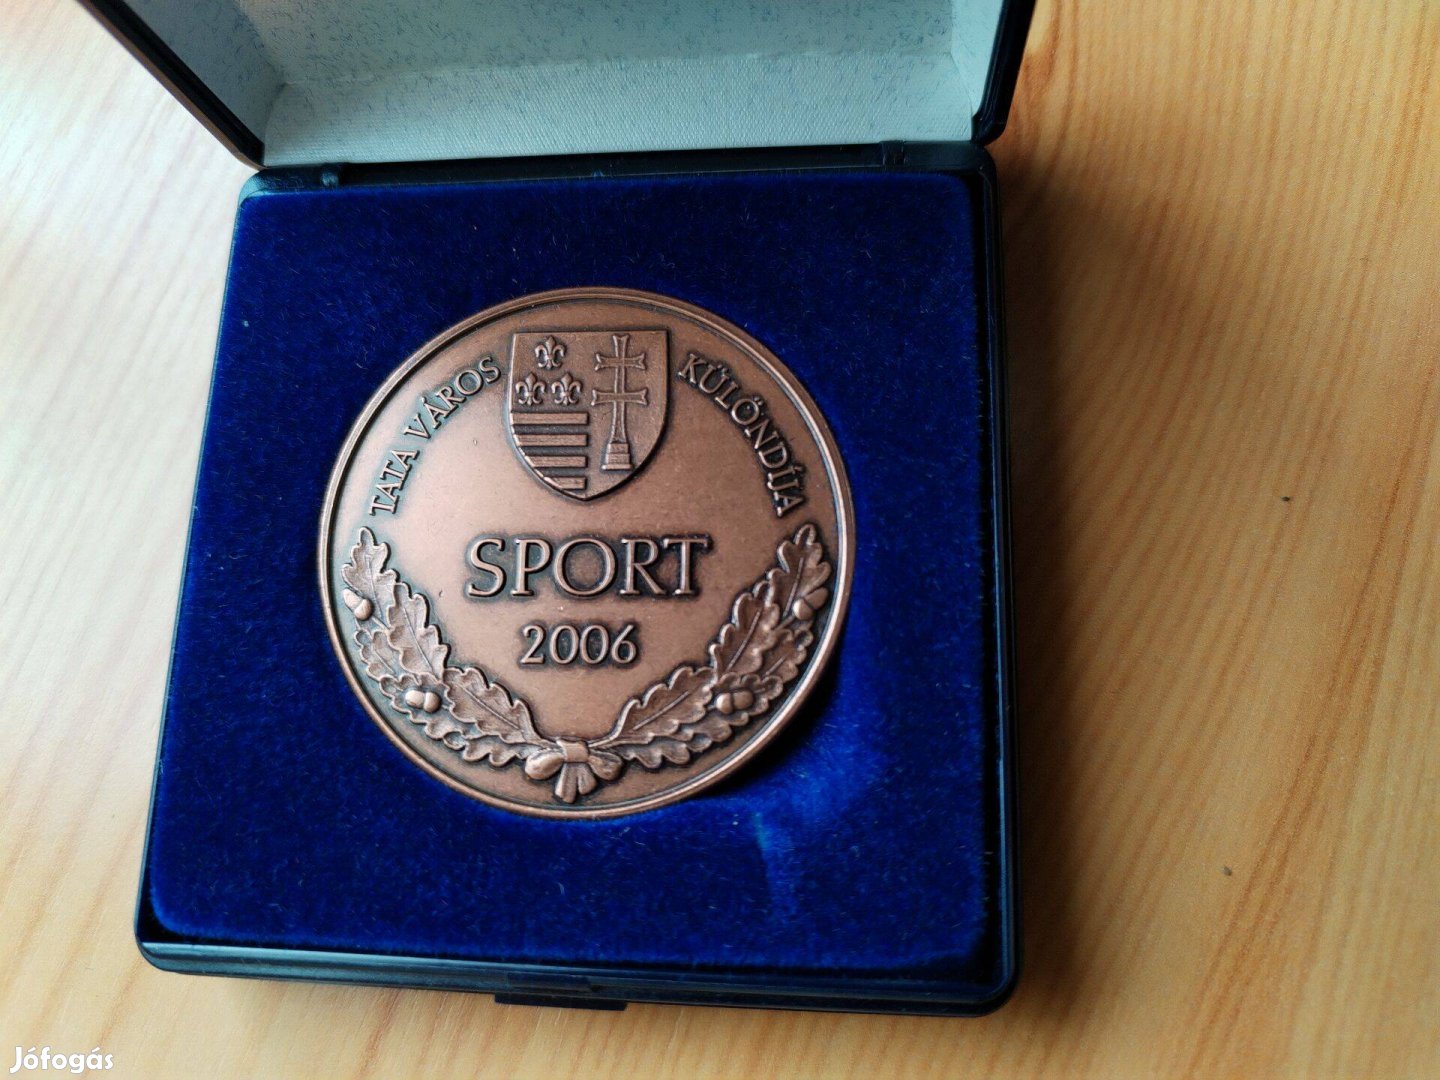 Tata Város 2006-os Sport különdija kitüntetés